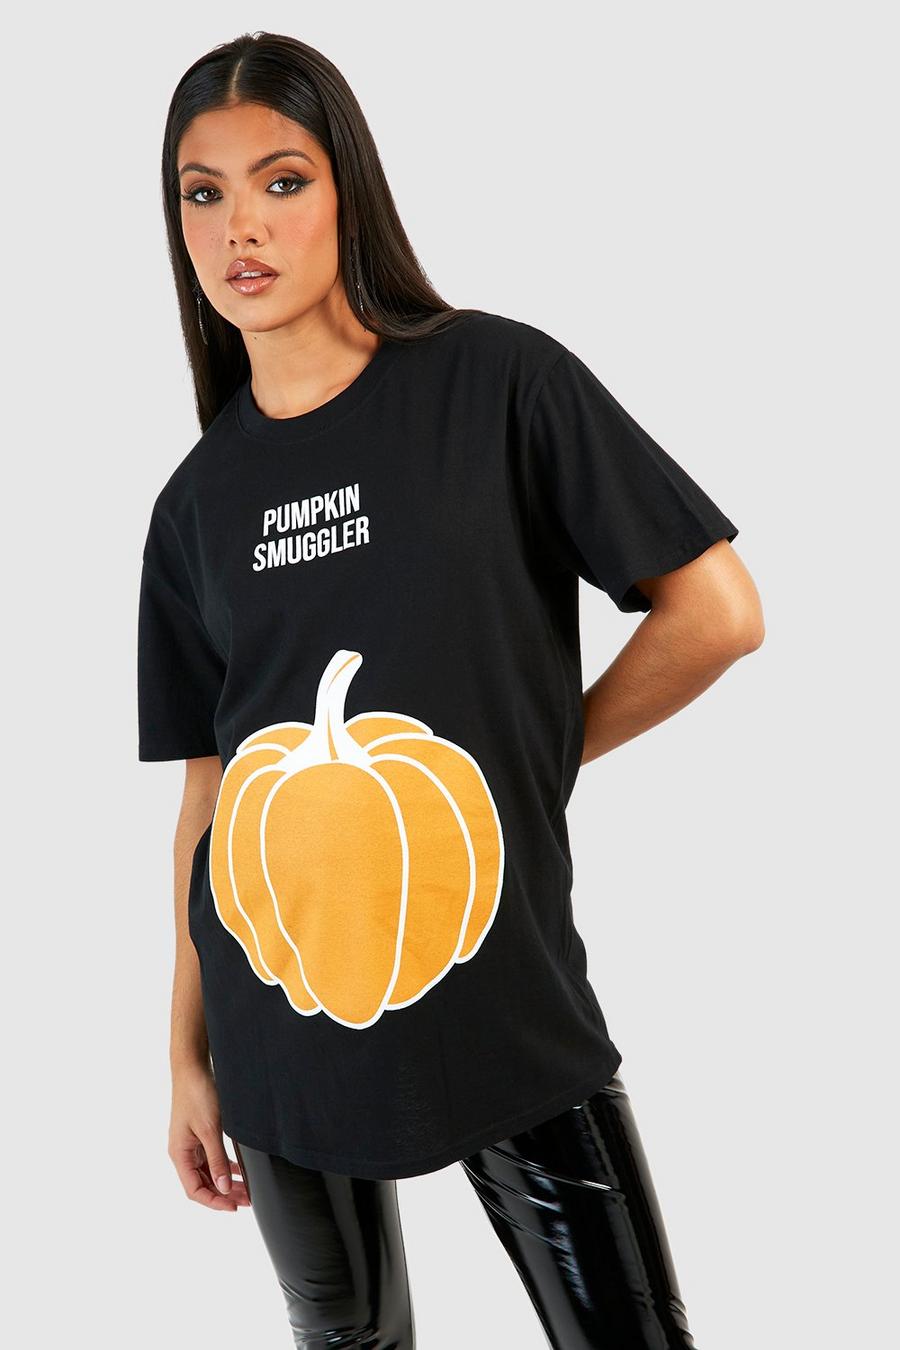 שחור טישרט 'Pumpkin Smuggler' להאלווין, בגדי היריון